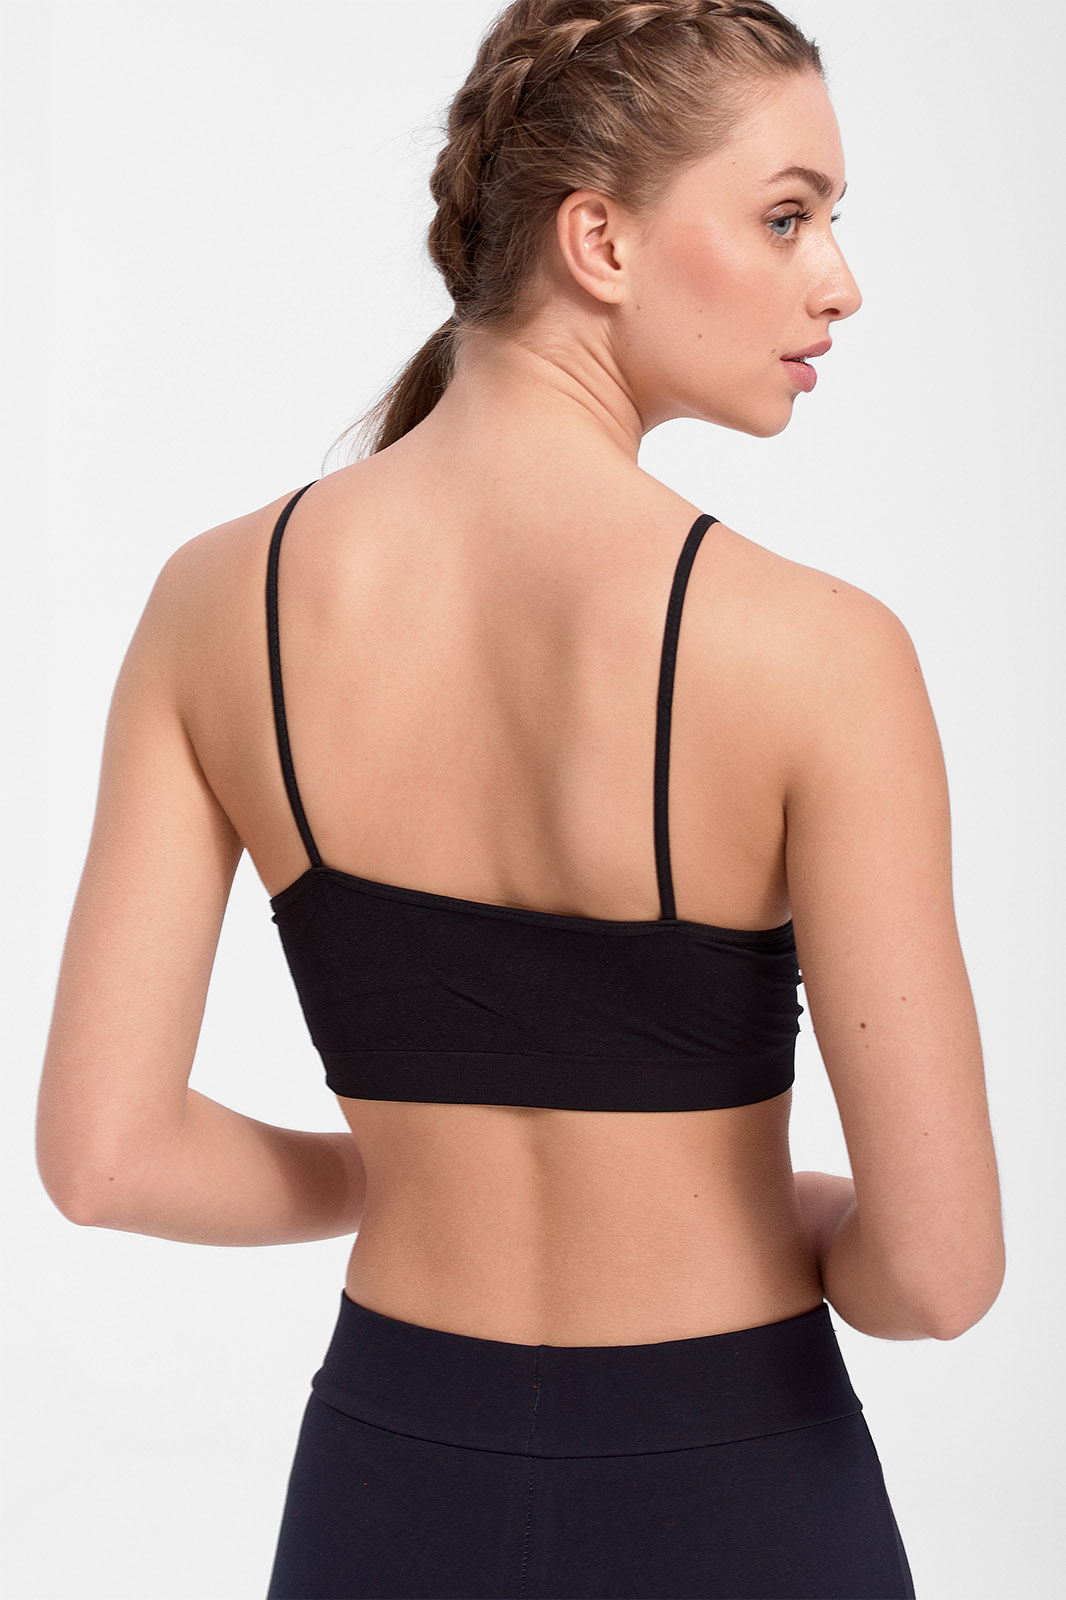 Sports bra without padding - Fitness